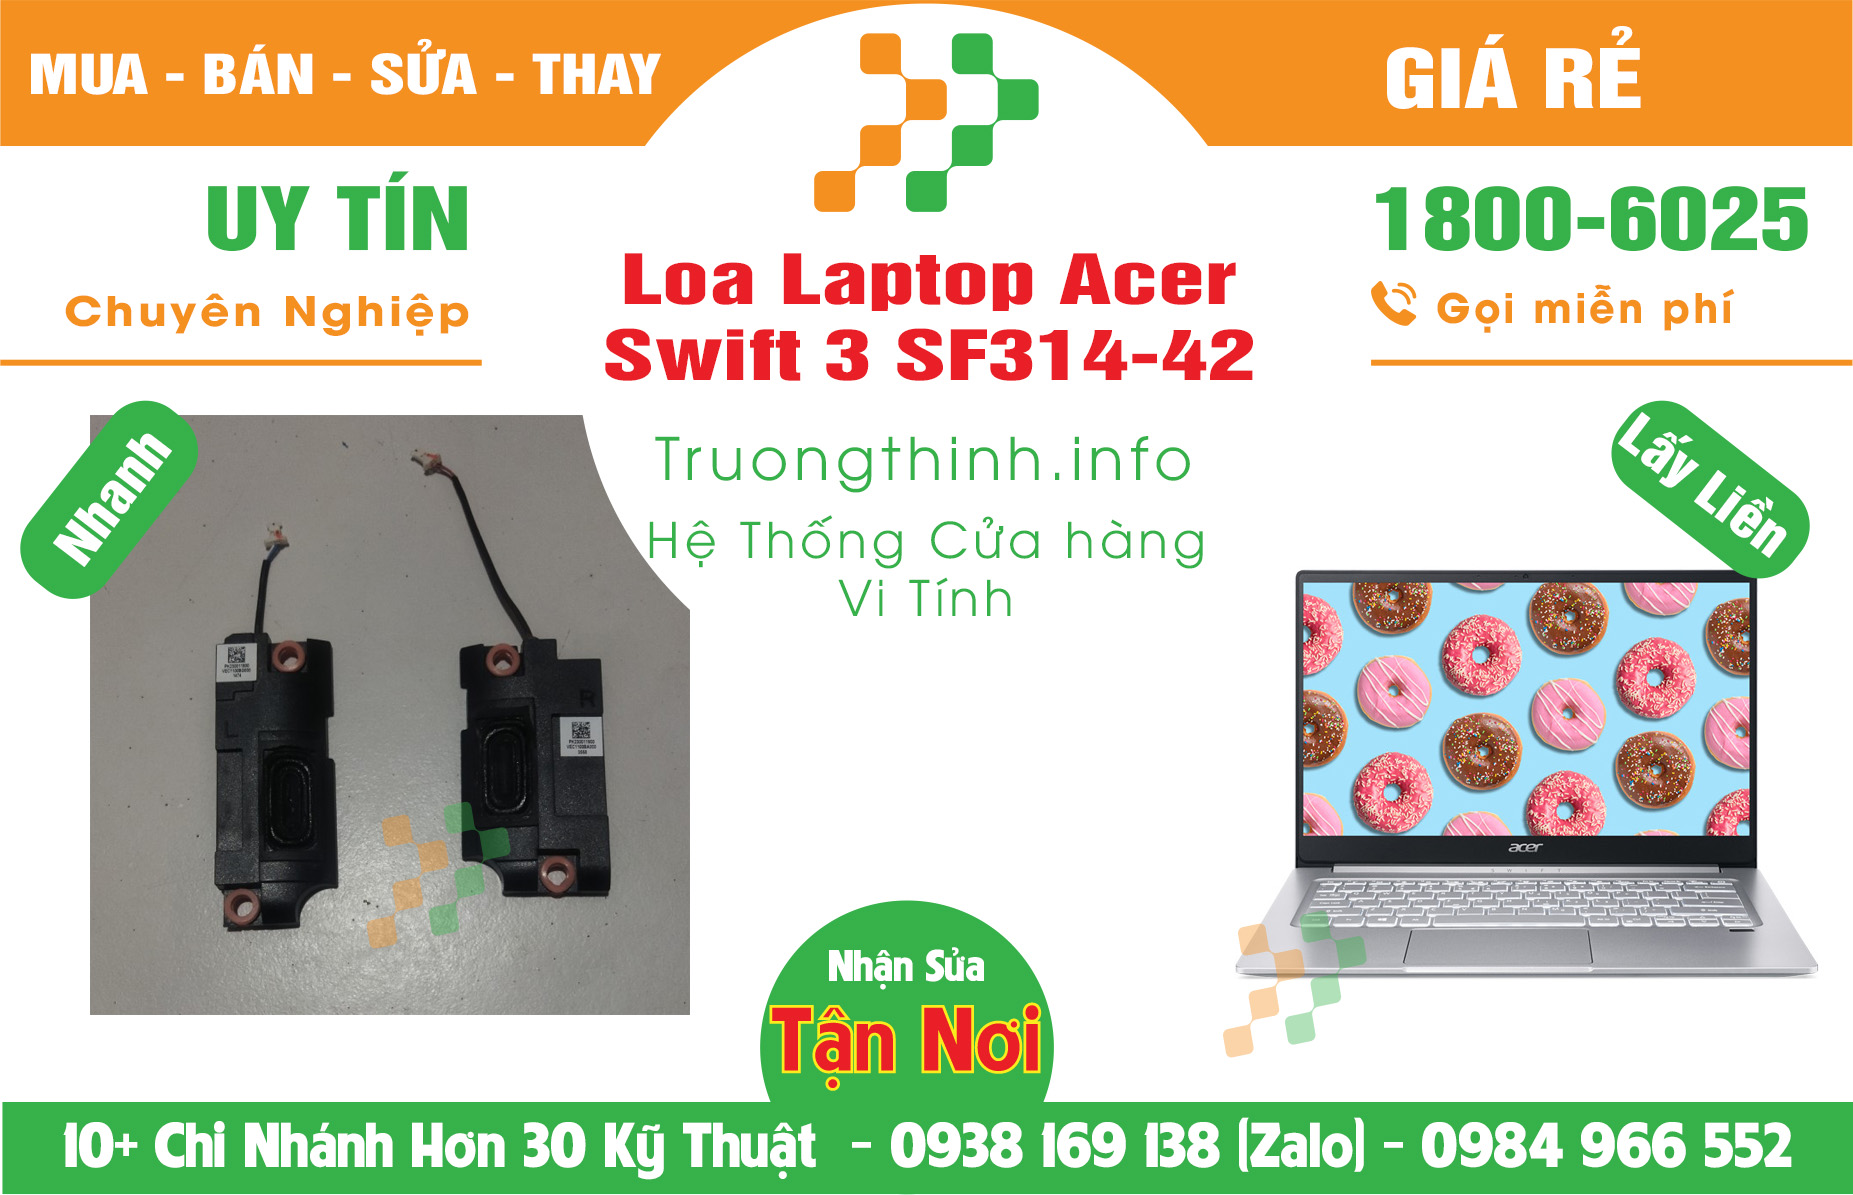 Mua Bán Pin Laptop Acer Swift 3 SF314-42 Giá Rẻ | Máy Tính Trường Thịnh Giá Rẻ